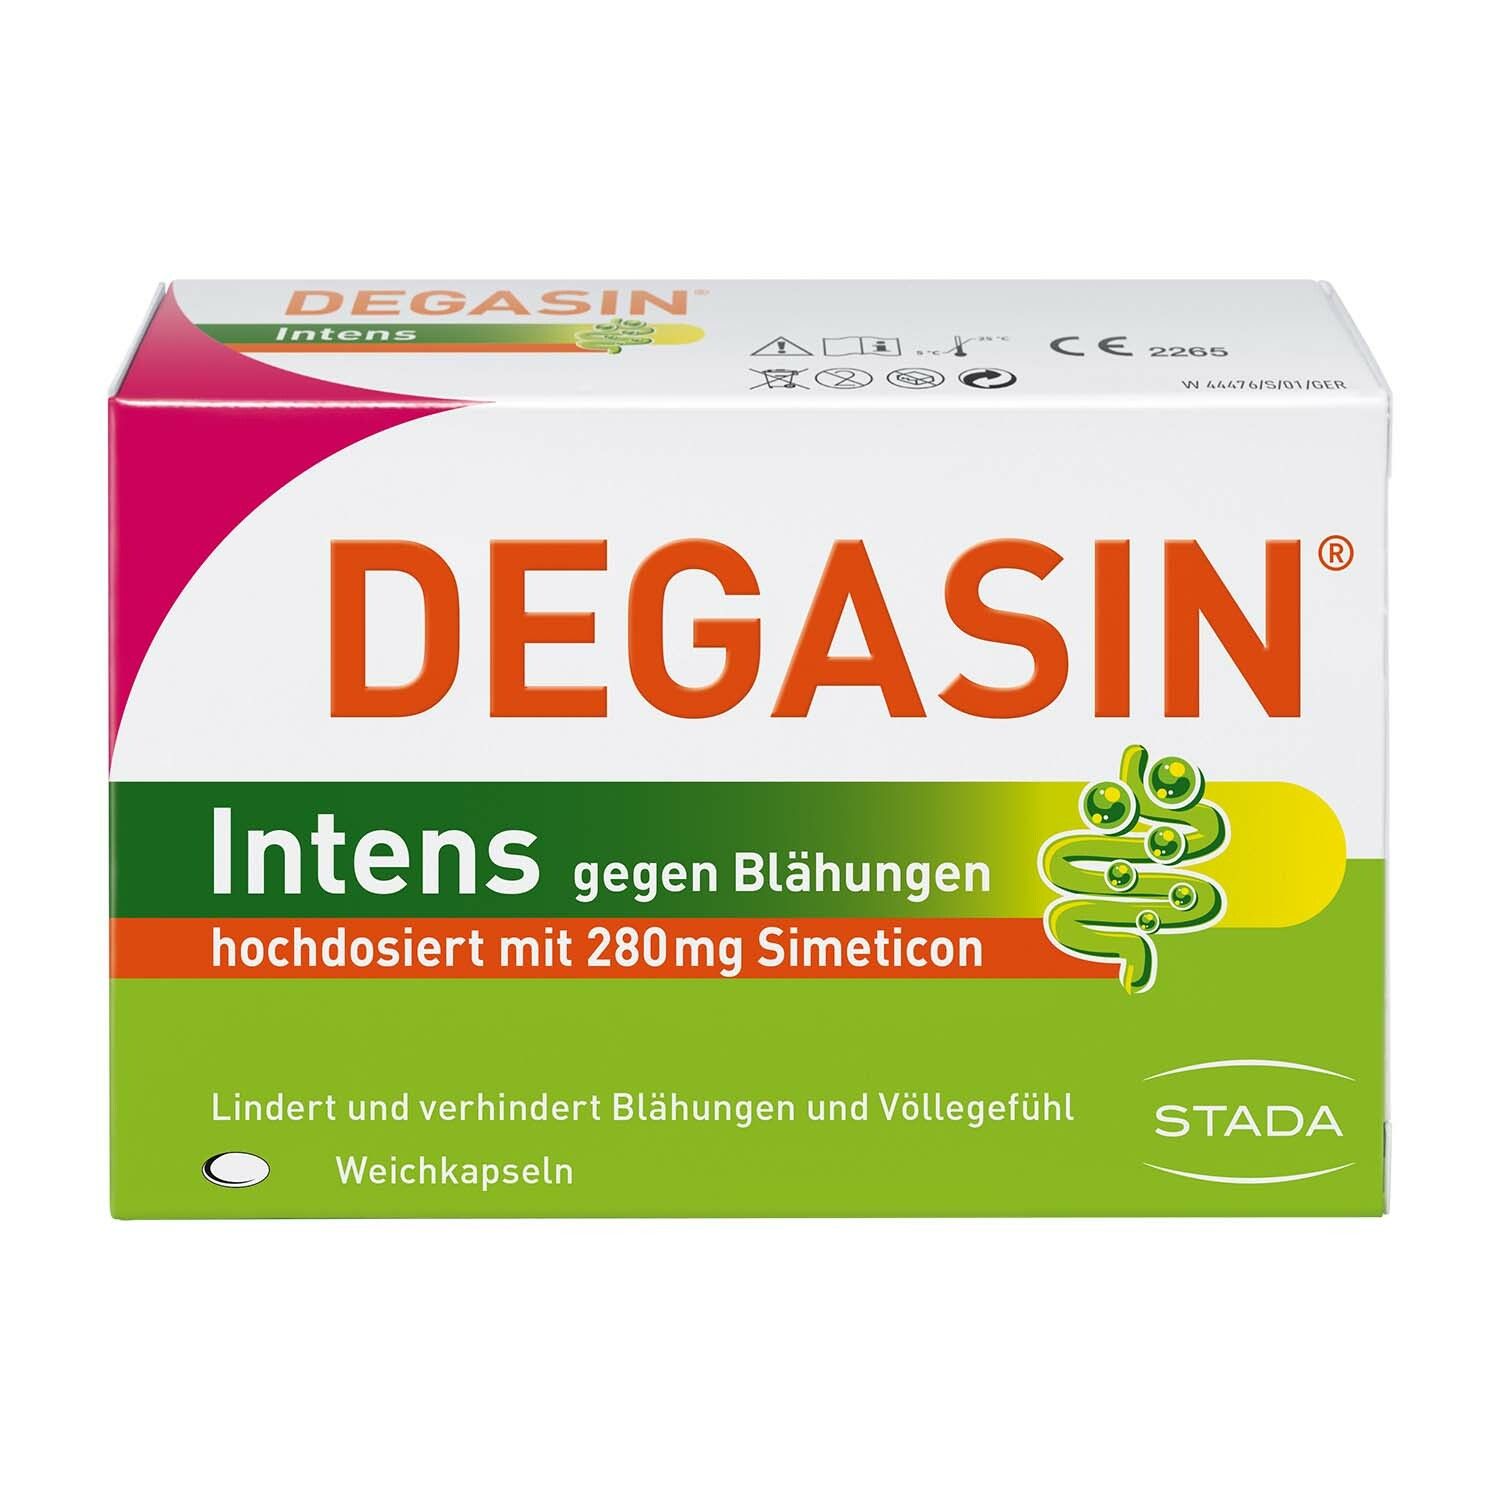 DEGASIN® Intens